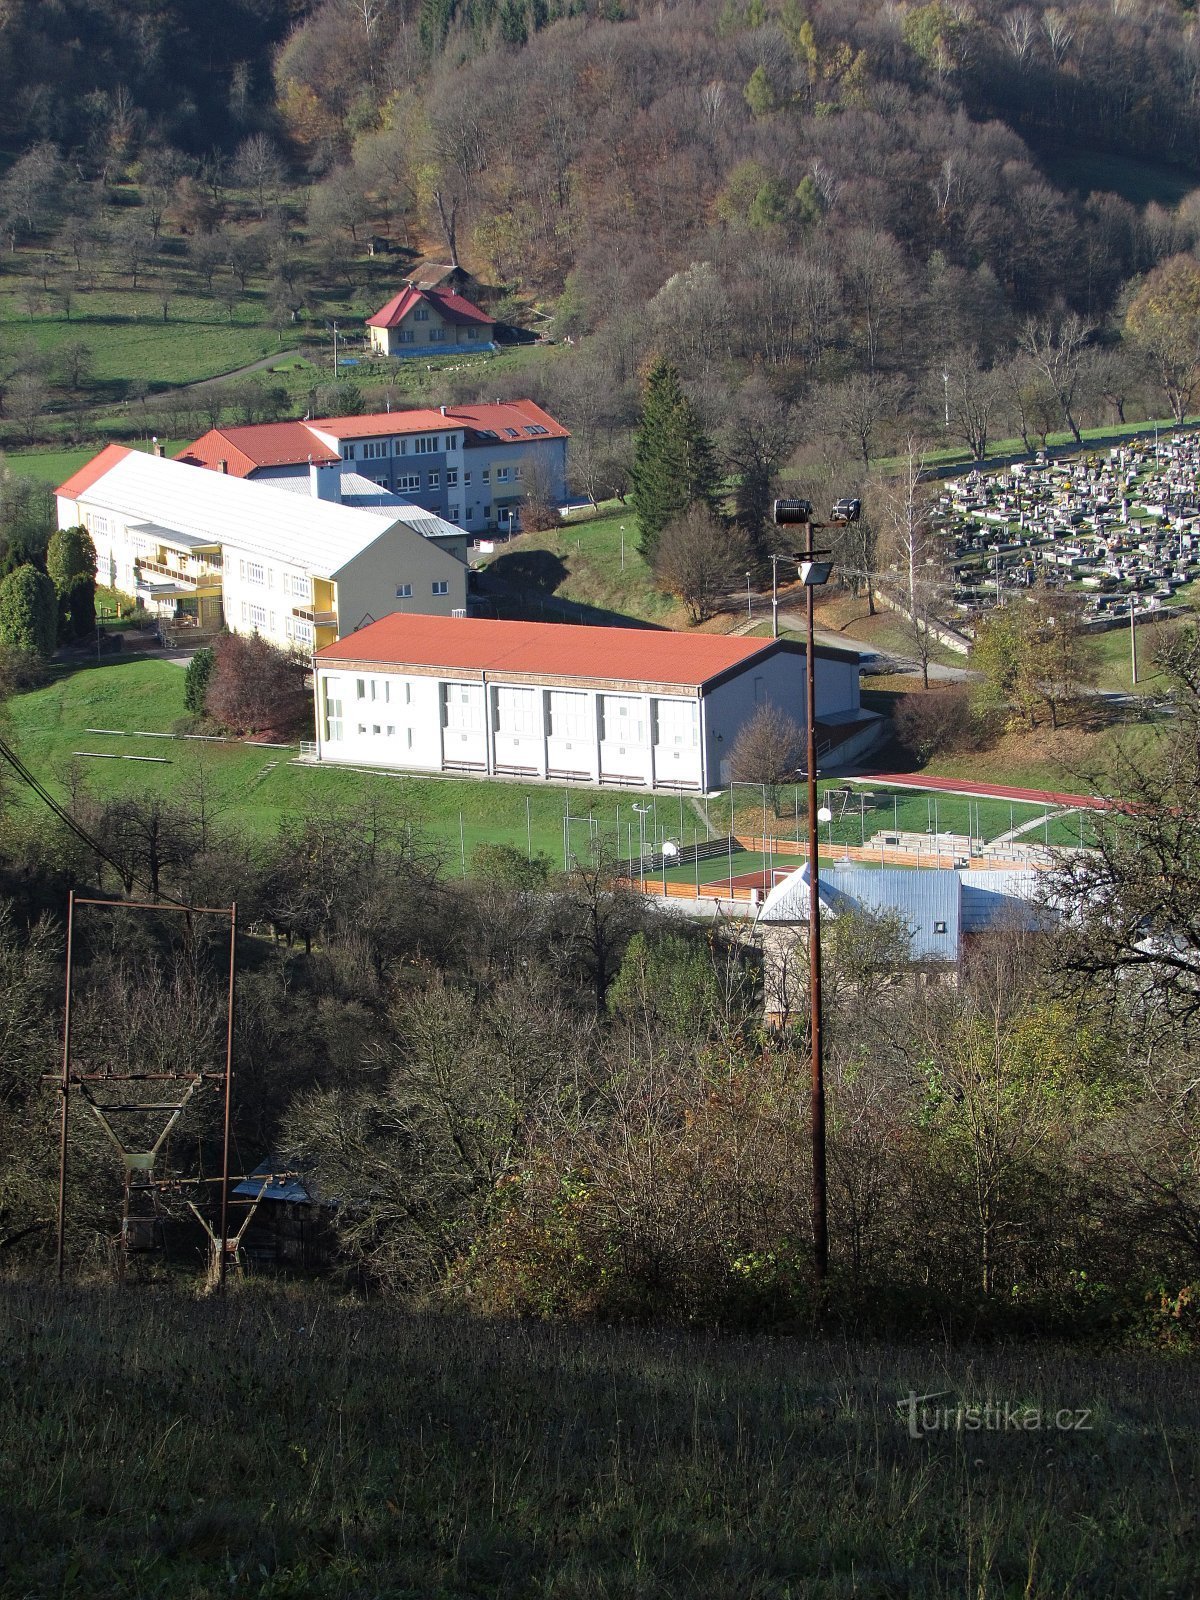 Δημοτικό σχολείο Kašava, νηπιαγωγείο και νεκροταφείο